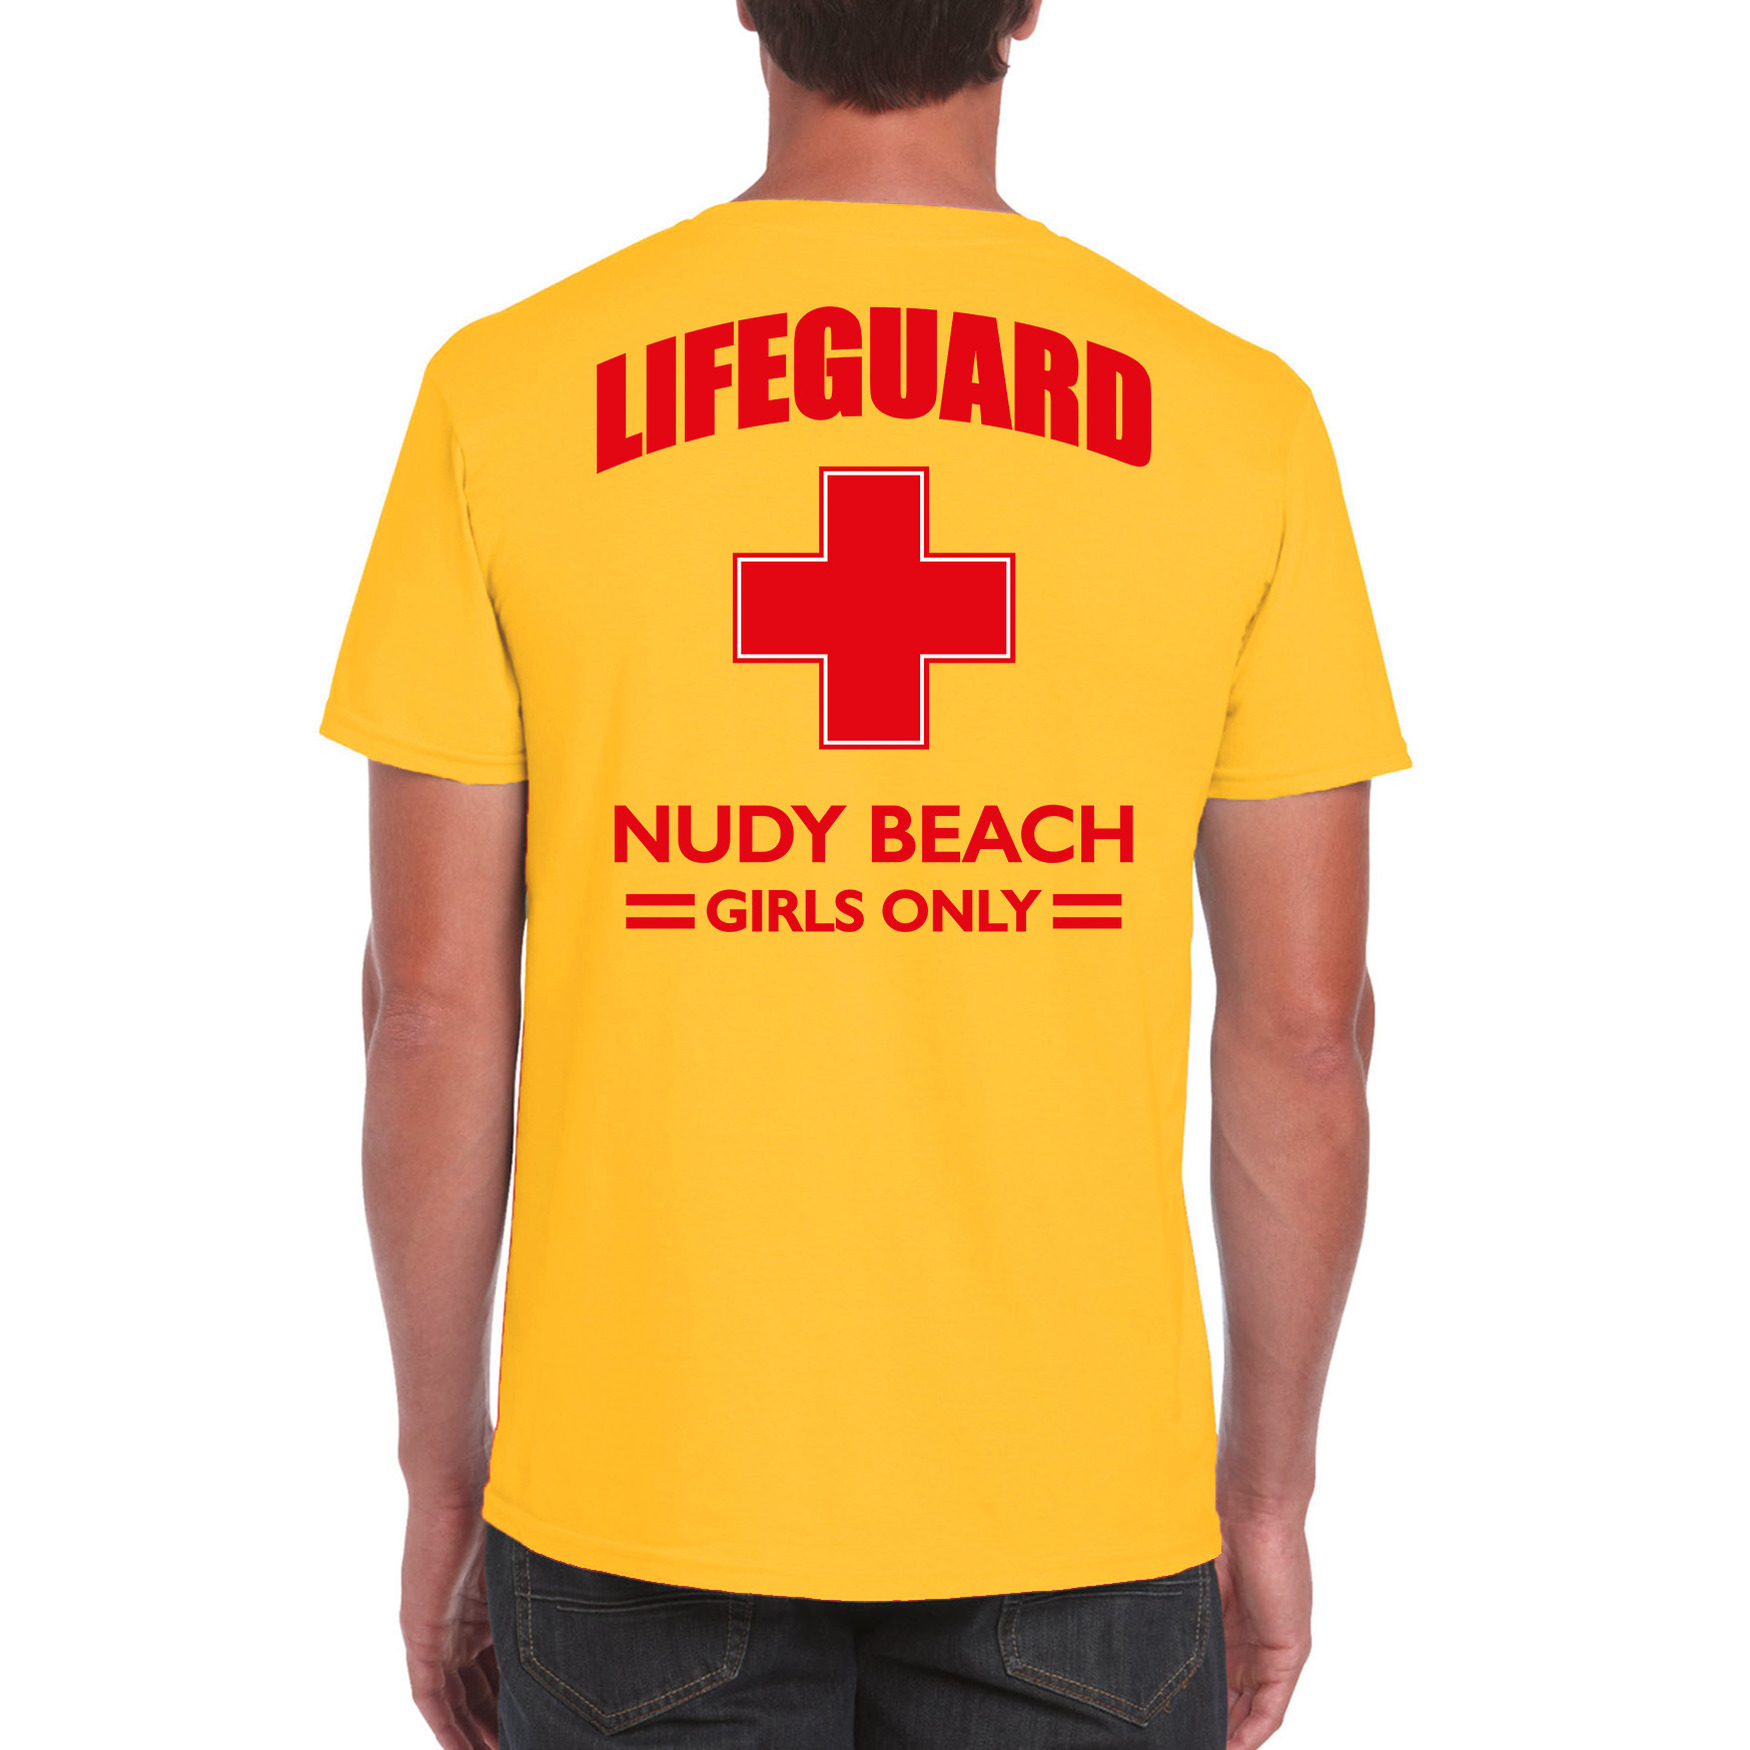 Carnavalskleding reddingsbrigade- lifeguard Nudy Beach girls only shirt geel-achter bedrukking heren